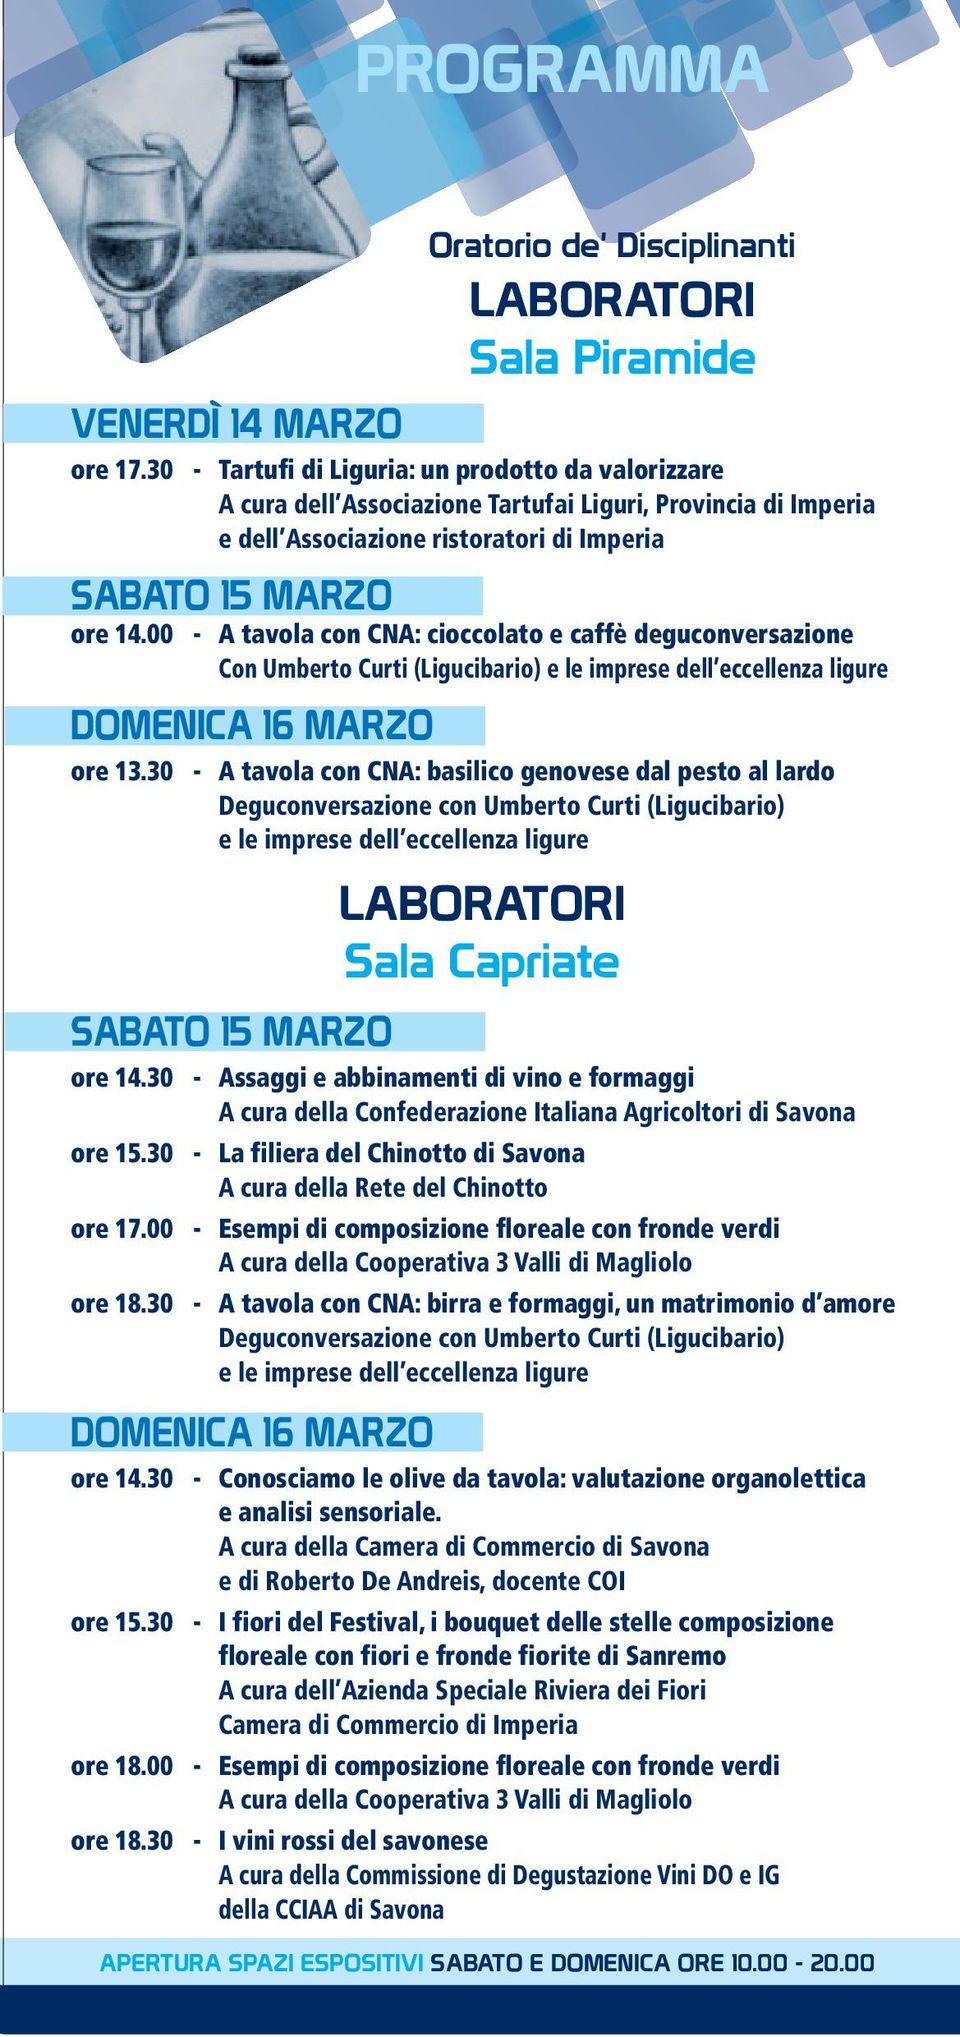 00 - A tavola con CNA: cioccolato e caffè deguconversazione Con Umberto Curti (Ligucibario) e le imprese dell eccellenza ligure ore 13.